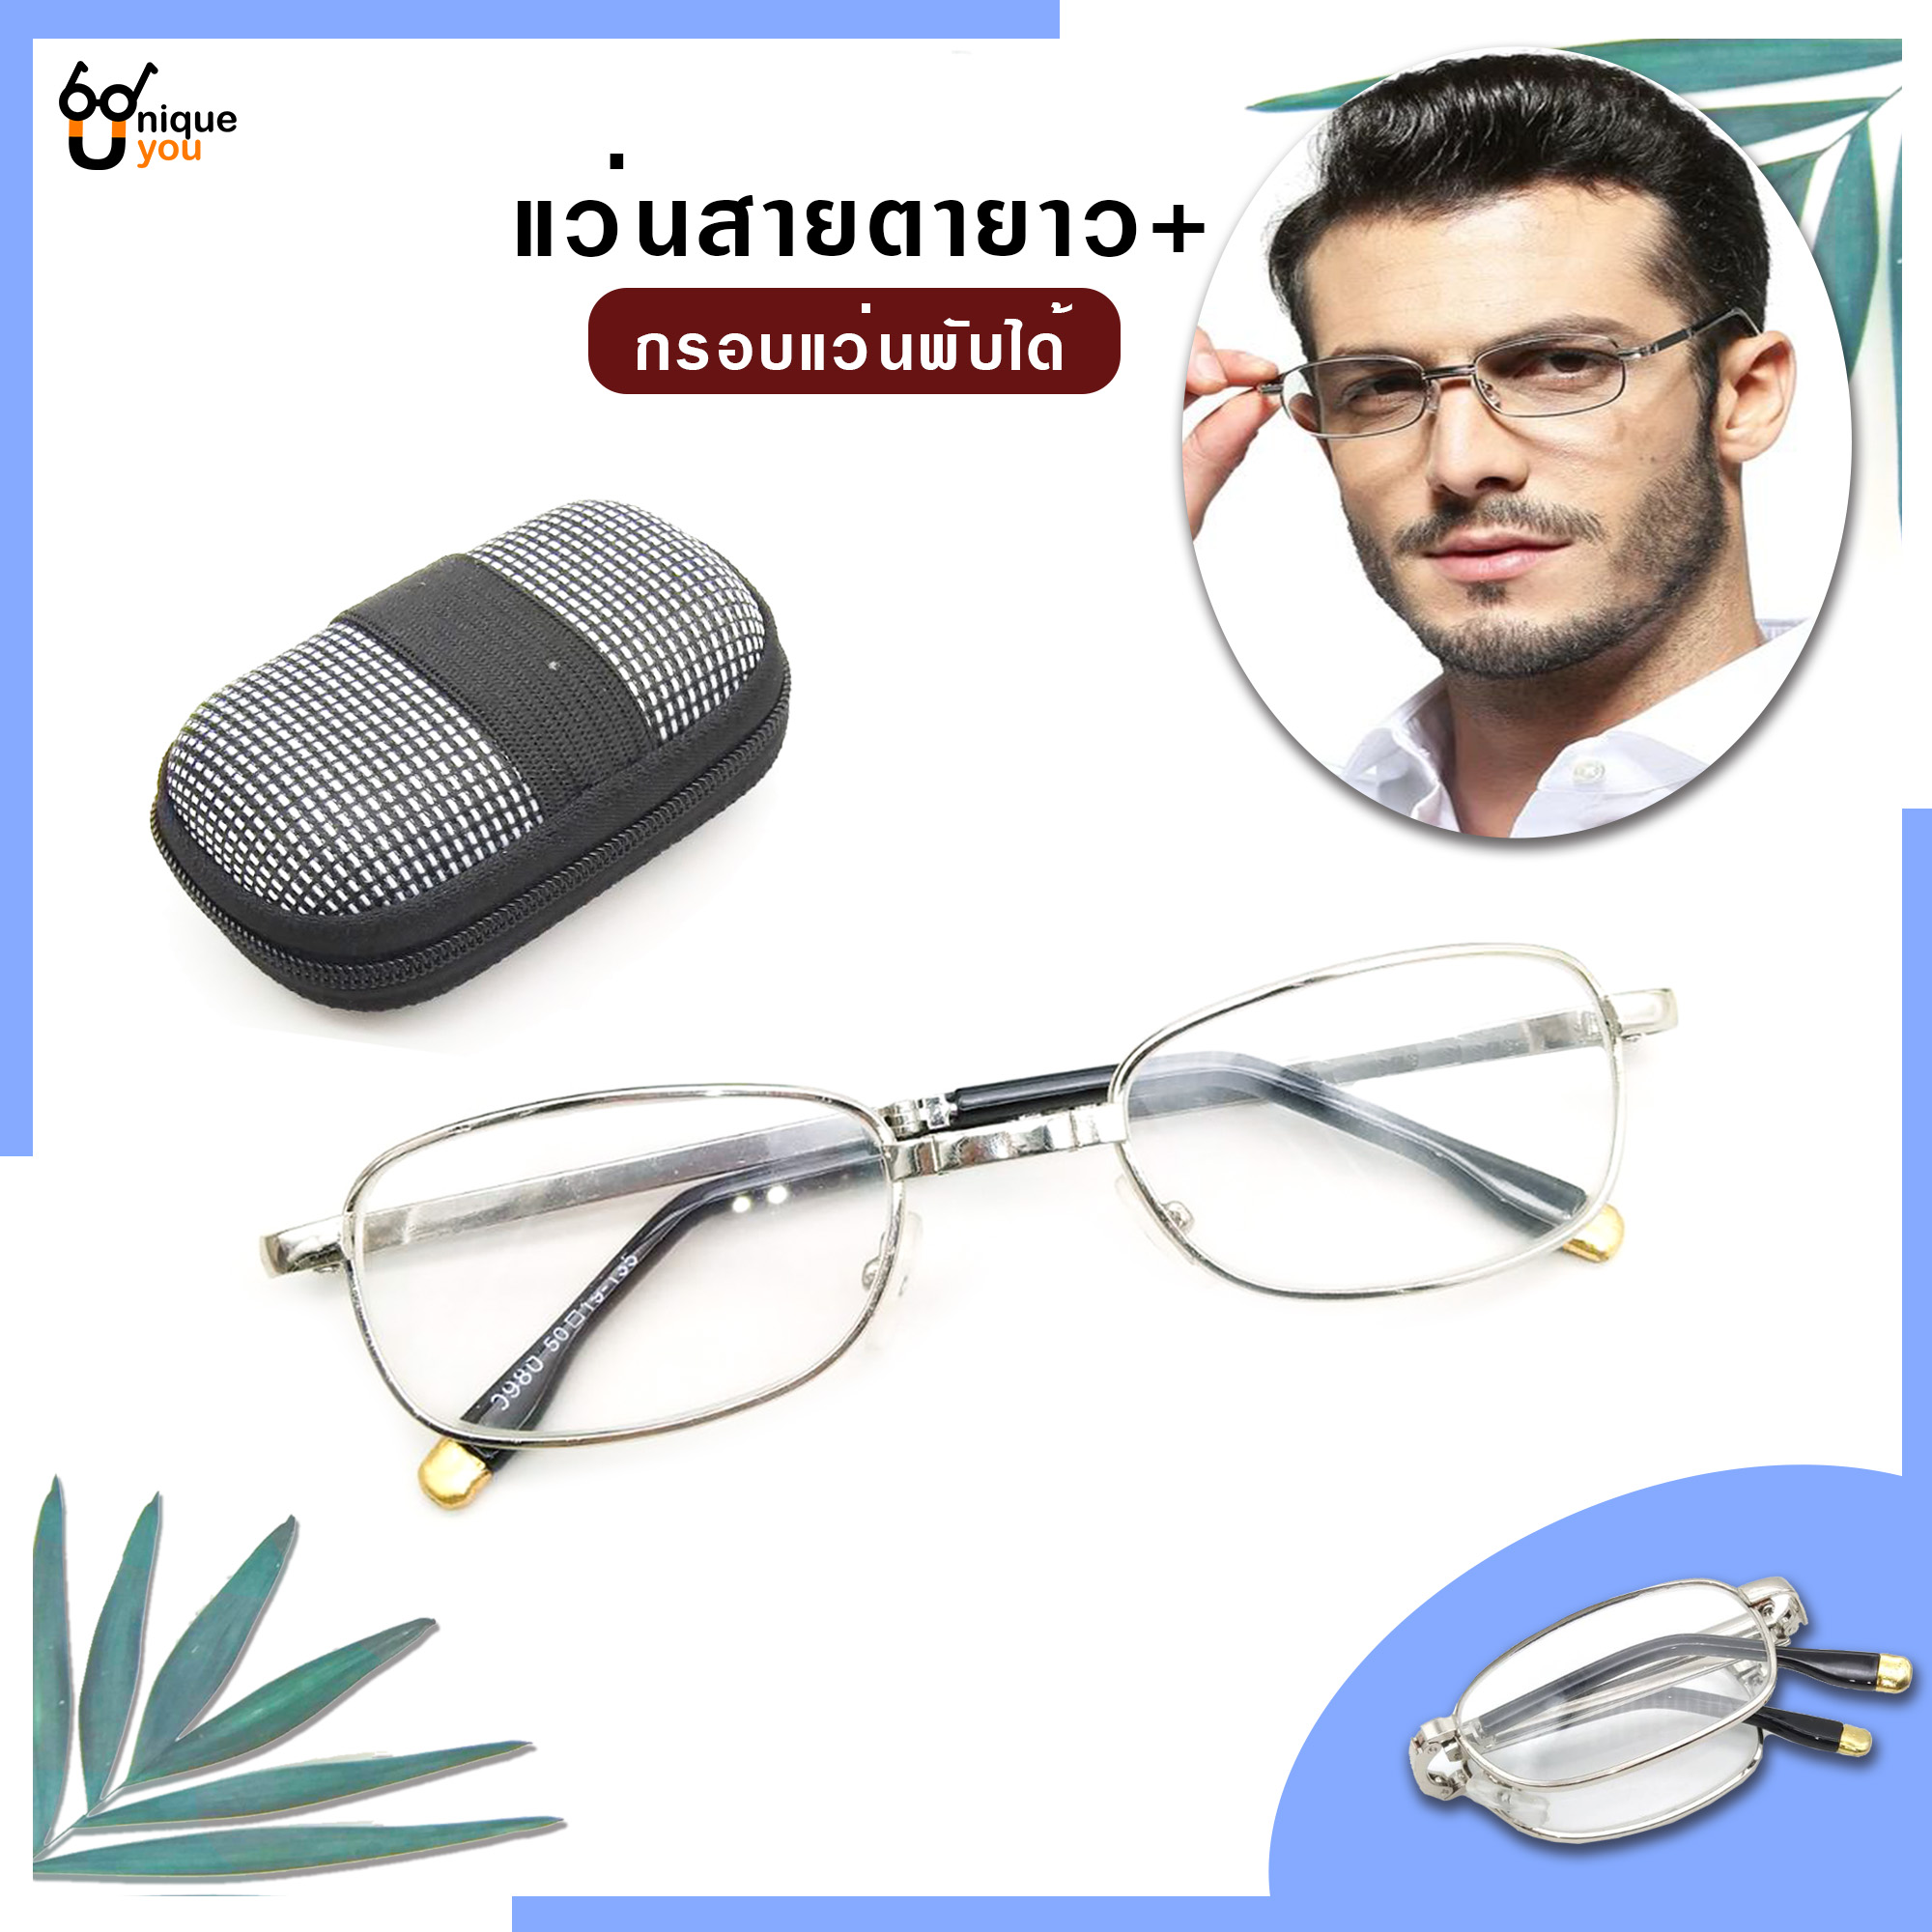 ข้อมูลเพิ่มเติมของ Uniq แว่นสายตายยาว พับได้ เลนส์กระจก แว่สายตากรอบแว่นพับได้ แว่นตาพับได้ แว่นสำหรับอ่านหนังสือ แว่นผู้สูงอายุ แว่นสายตาสำหรับอ่านหนอ